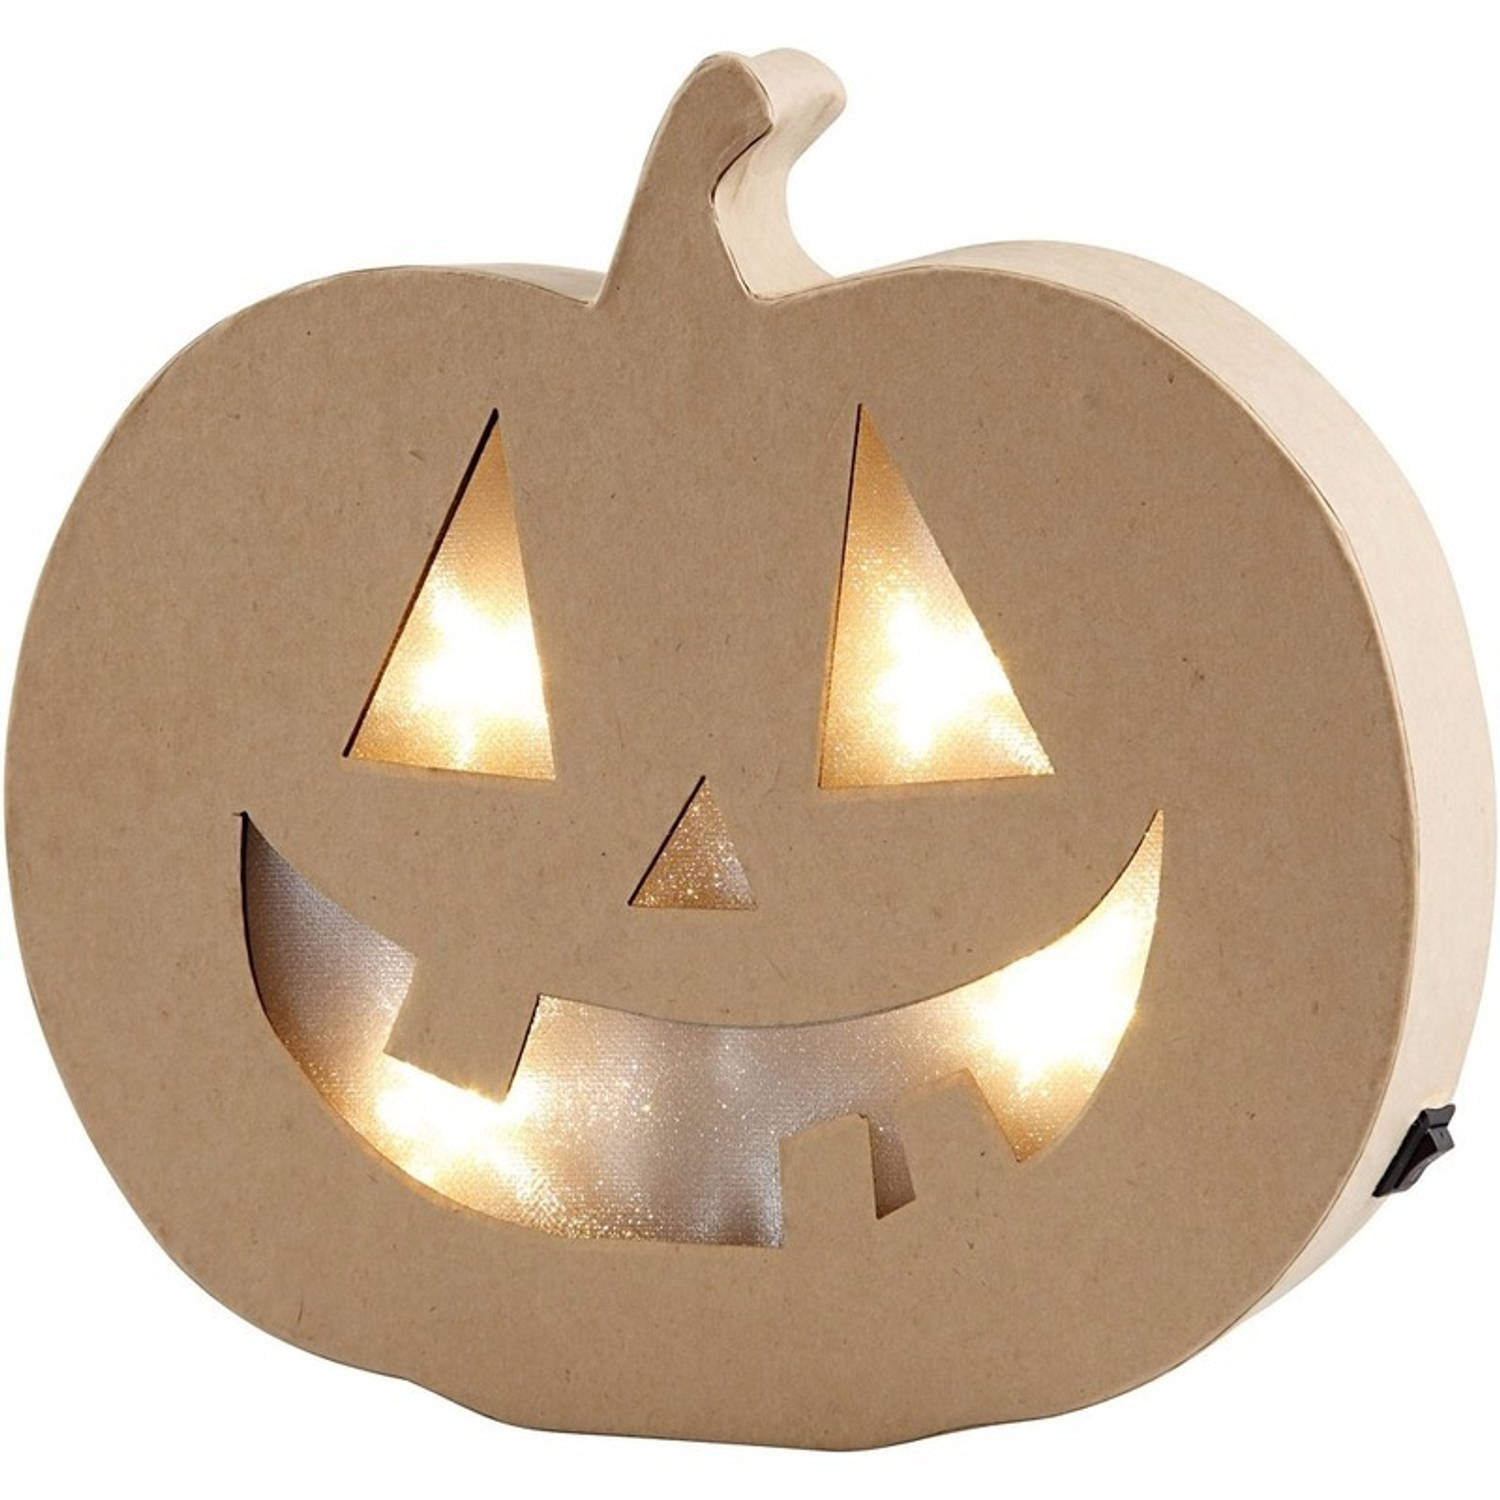 Buiten vijver musicus Halloween - Pompoen Halloween decoratie met licht 22 cm -  Feestdecoratievoorwerp | Blokker